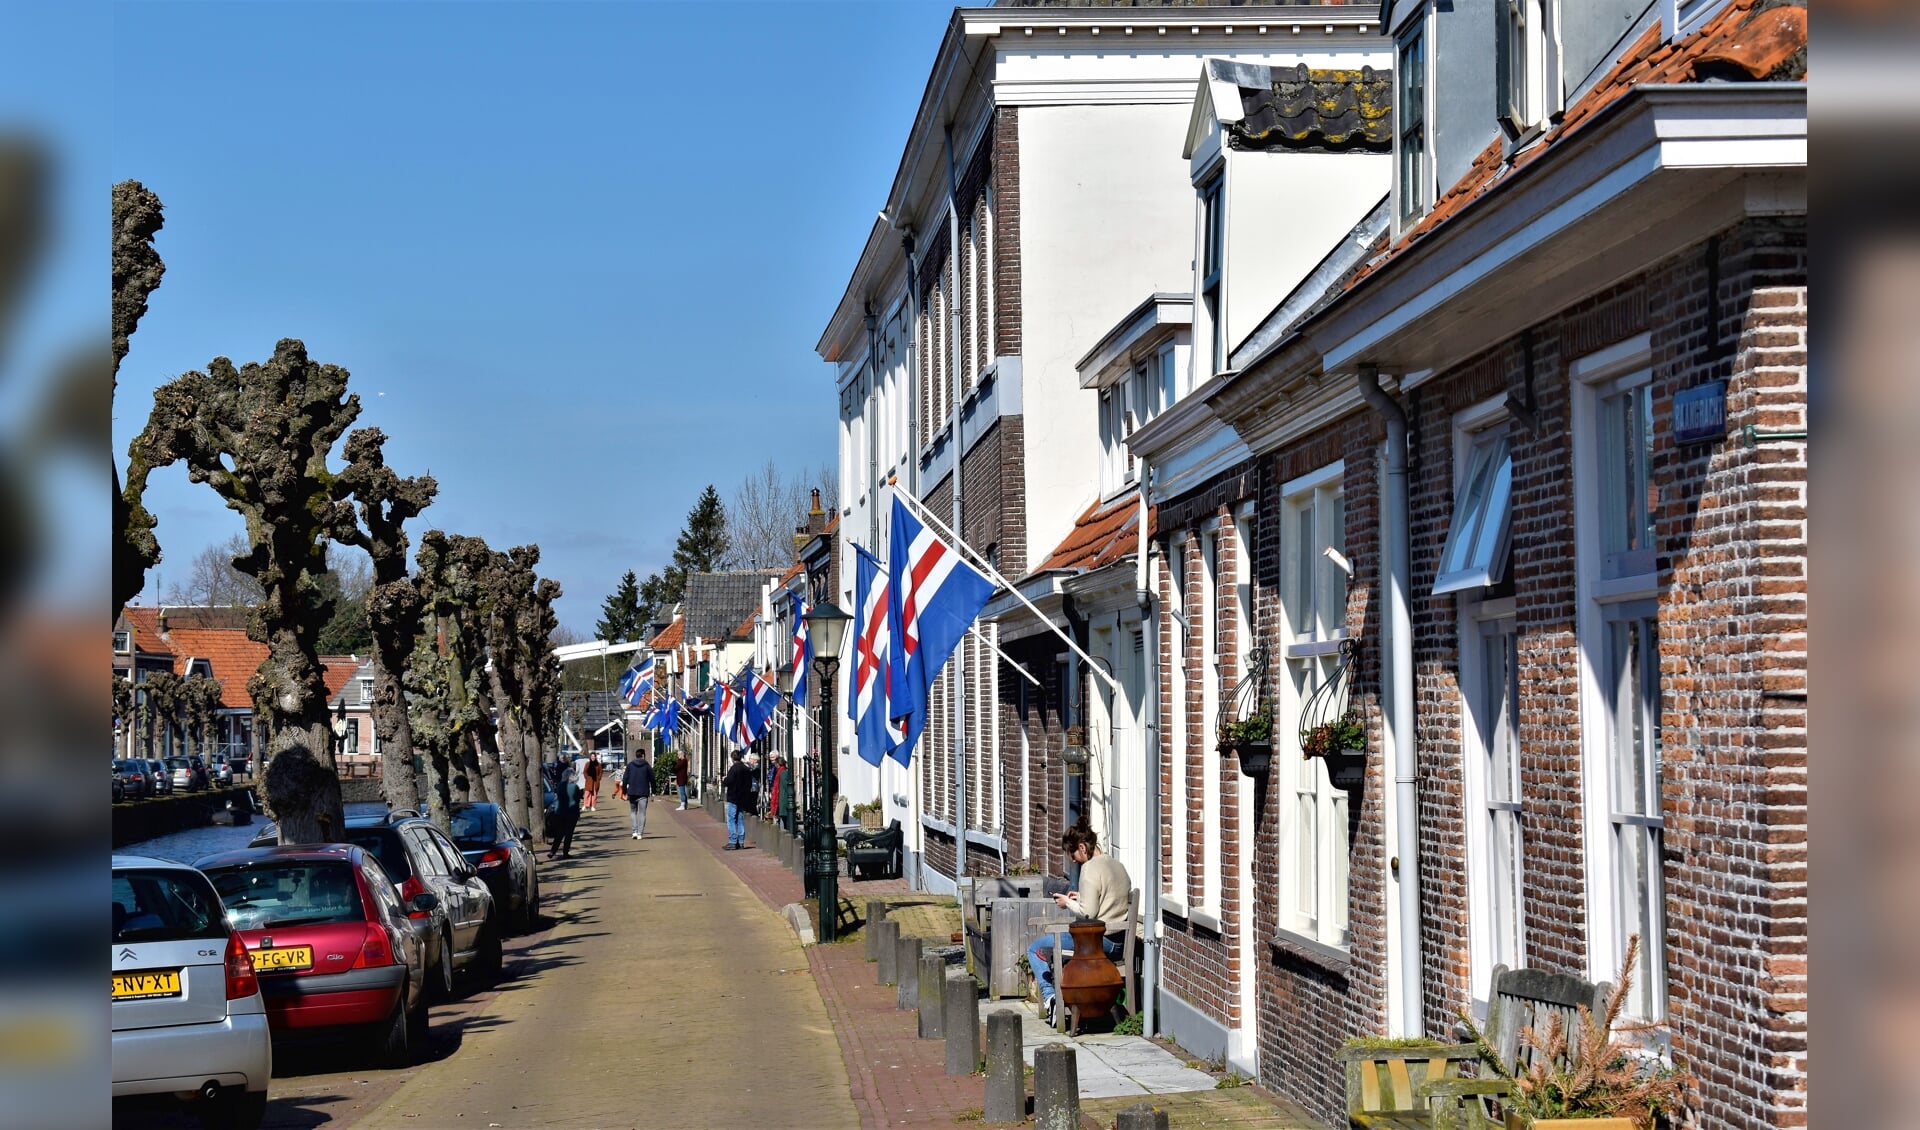 In maart hing de Hasselter vlag aan veel huizen in de Hanzestad